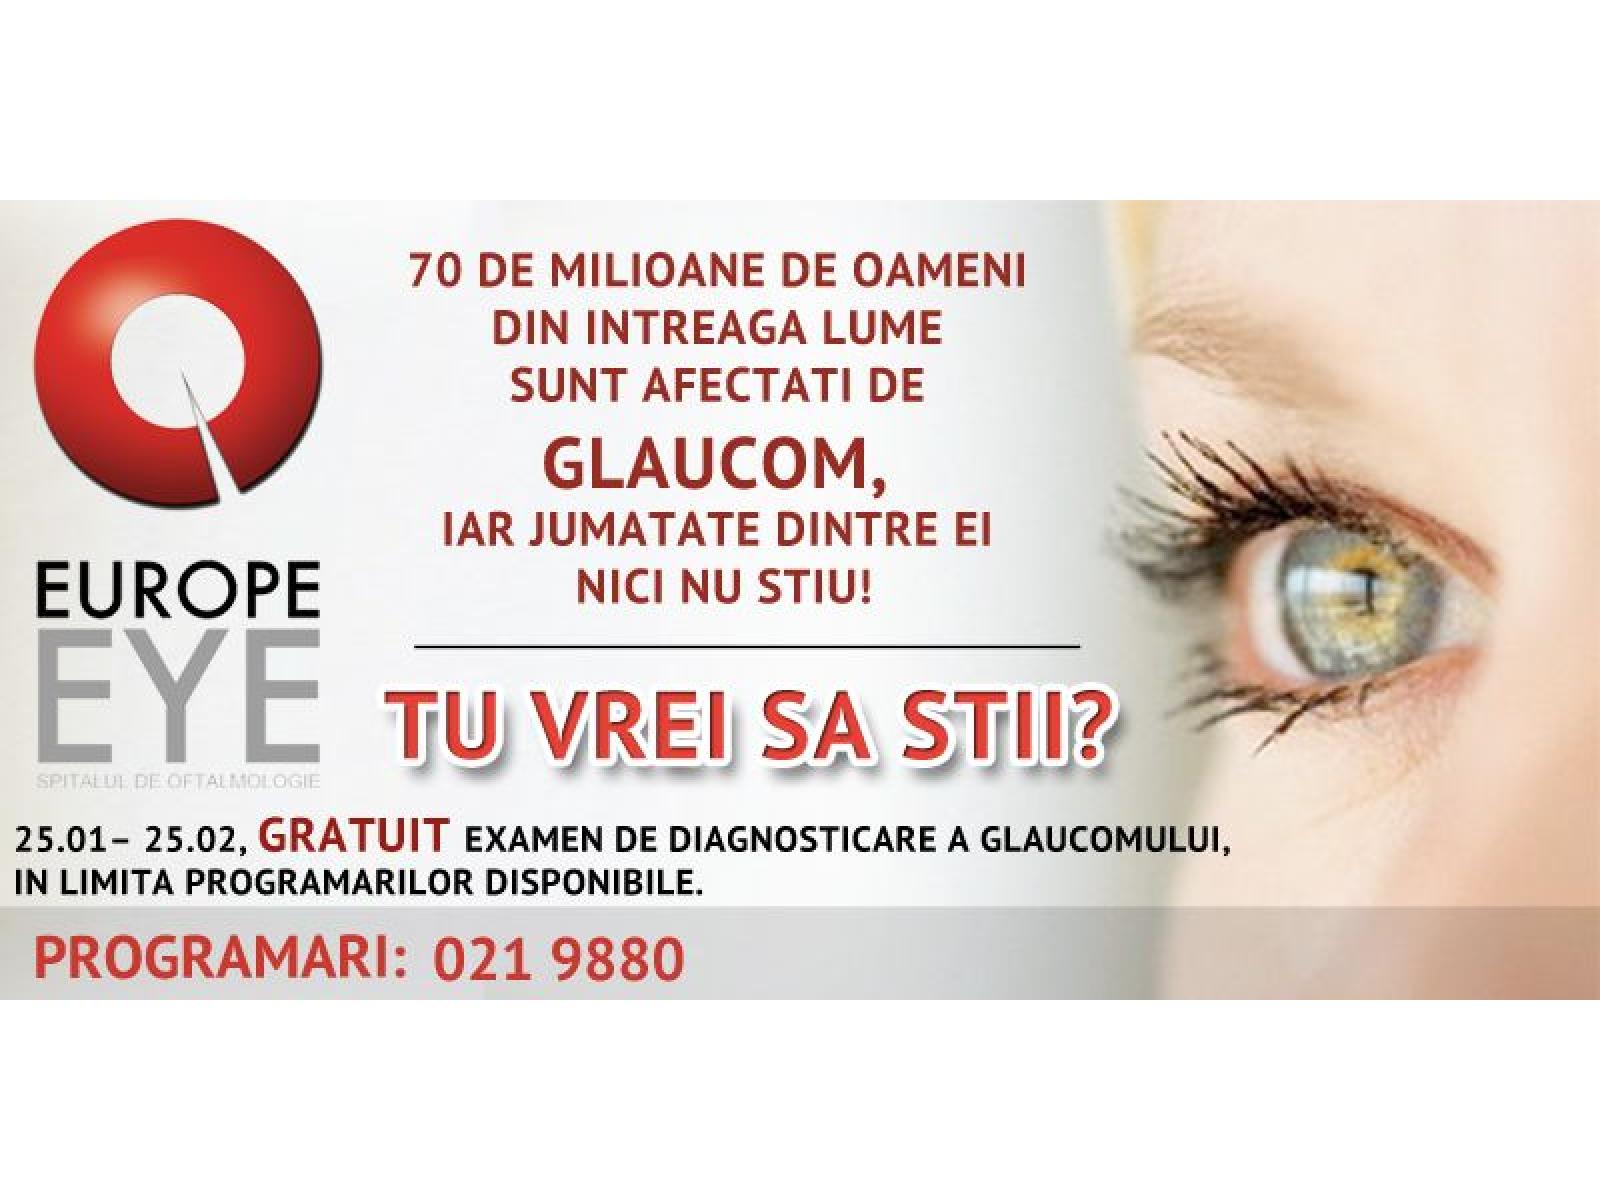 Europe Eye, Spitalul Privat de Oftalmologie - 1.jpg